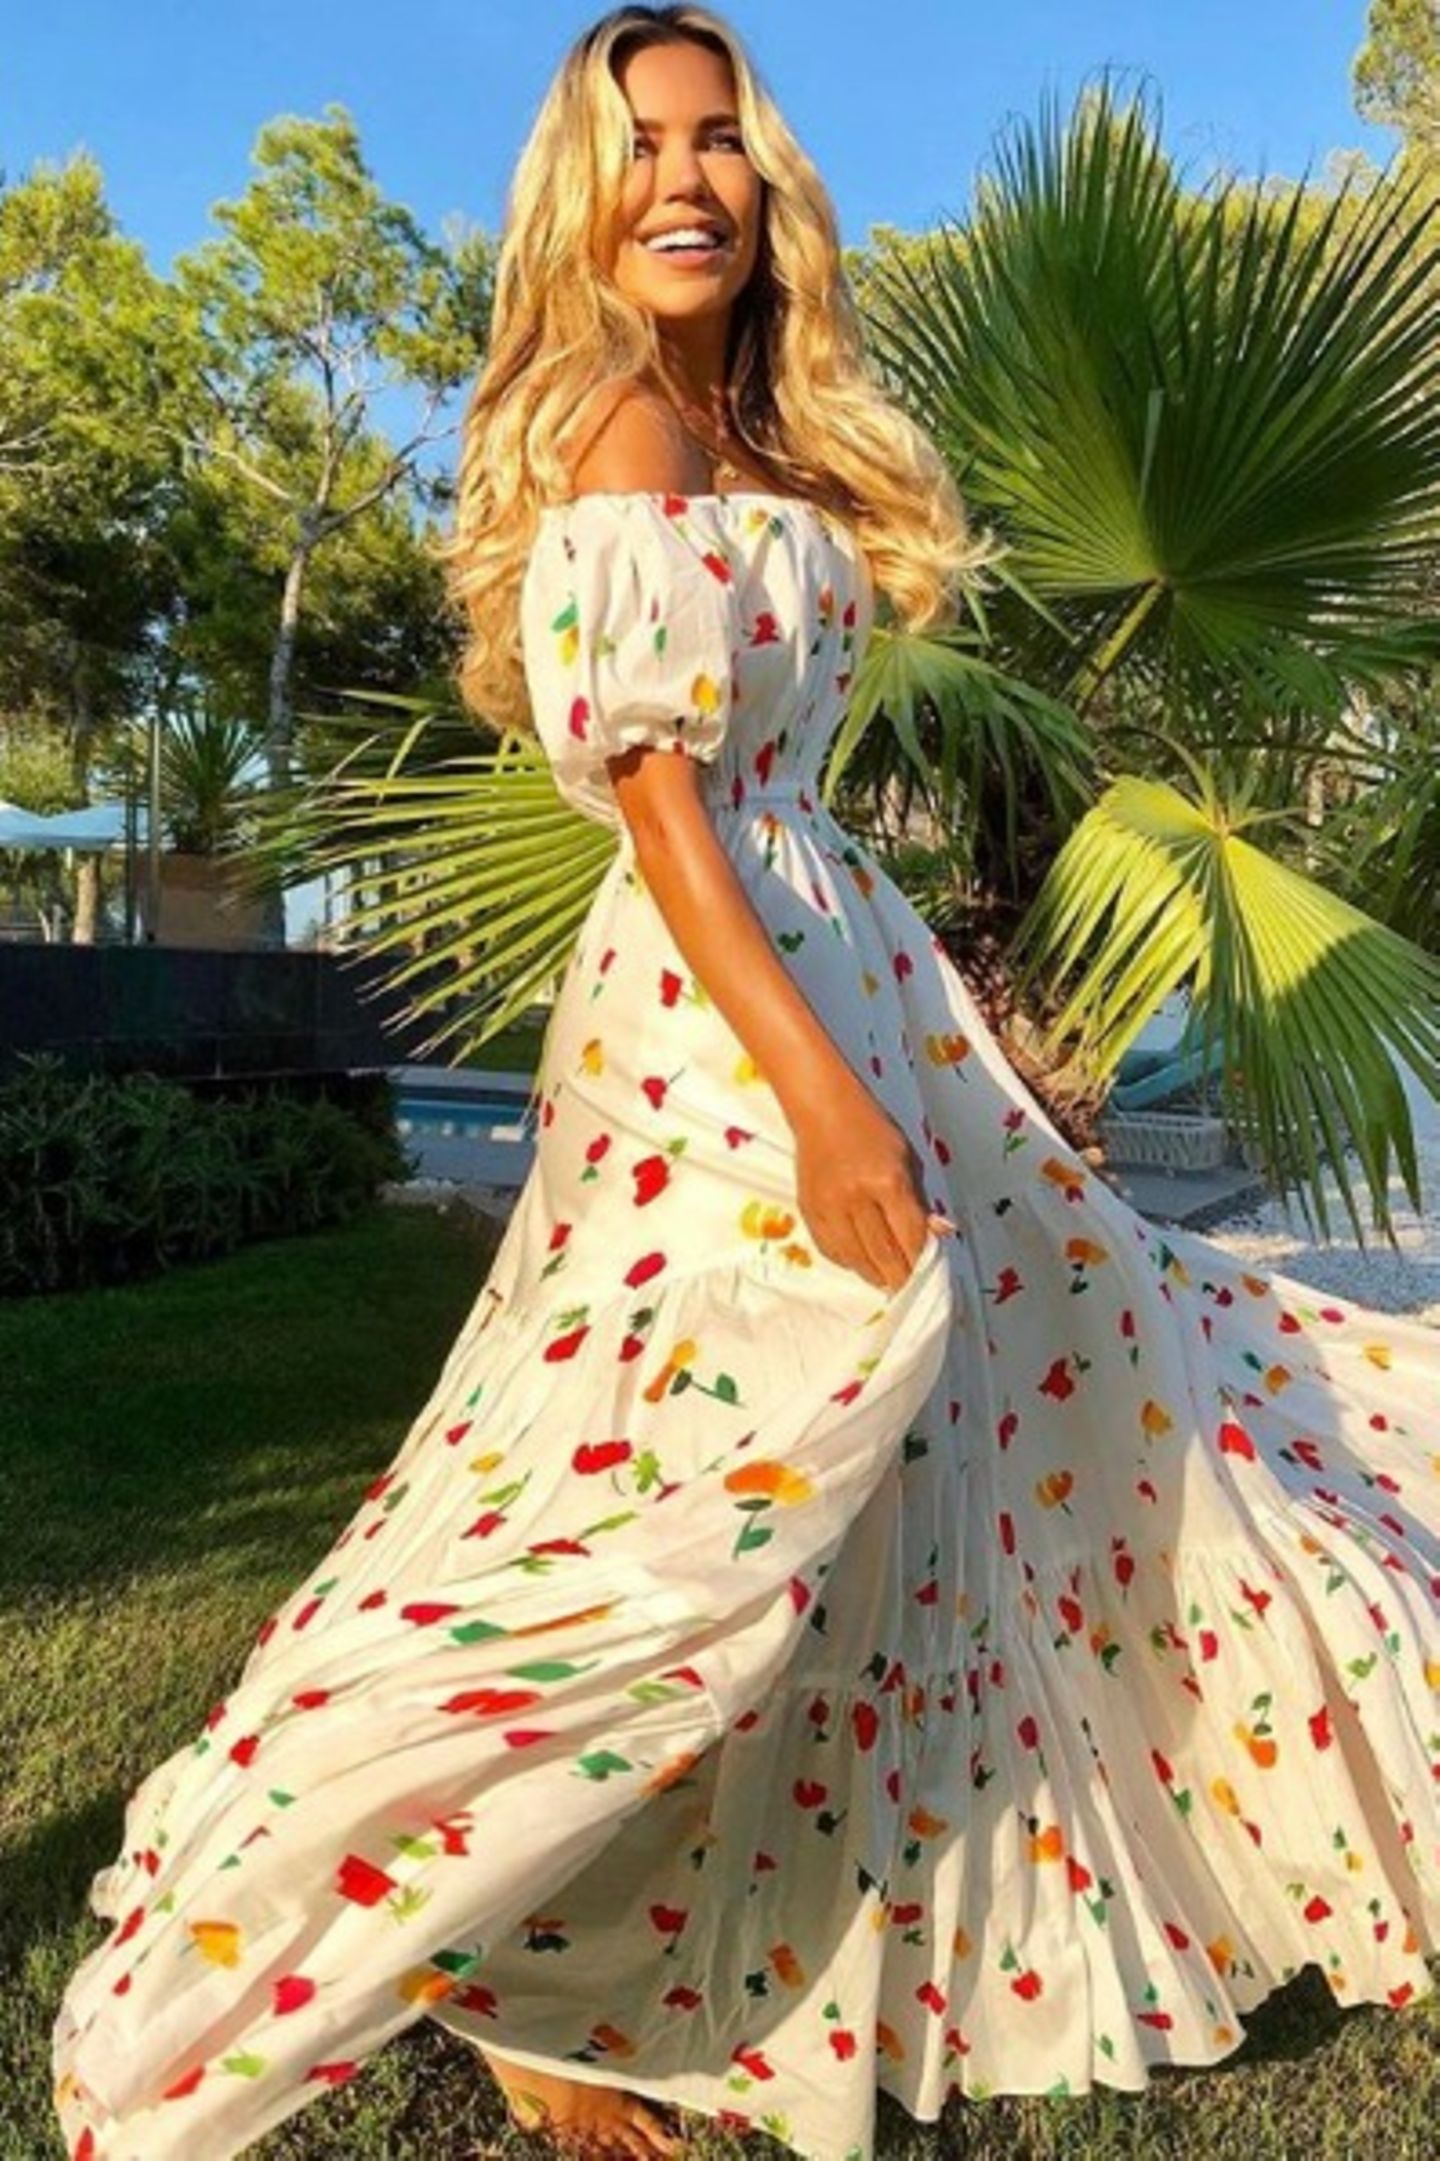 Sommerfeeling pur! Sylvie Meis stellt auf Instagram mal wieder ihren Fashion-Geschmack unter Beweis und macht mit diesem XXL-Kleid alles richtig. 